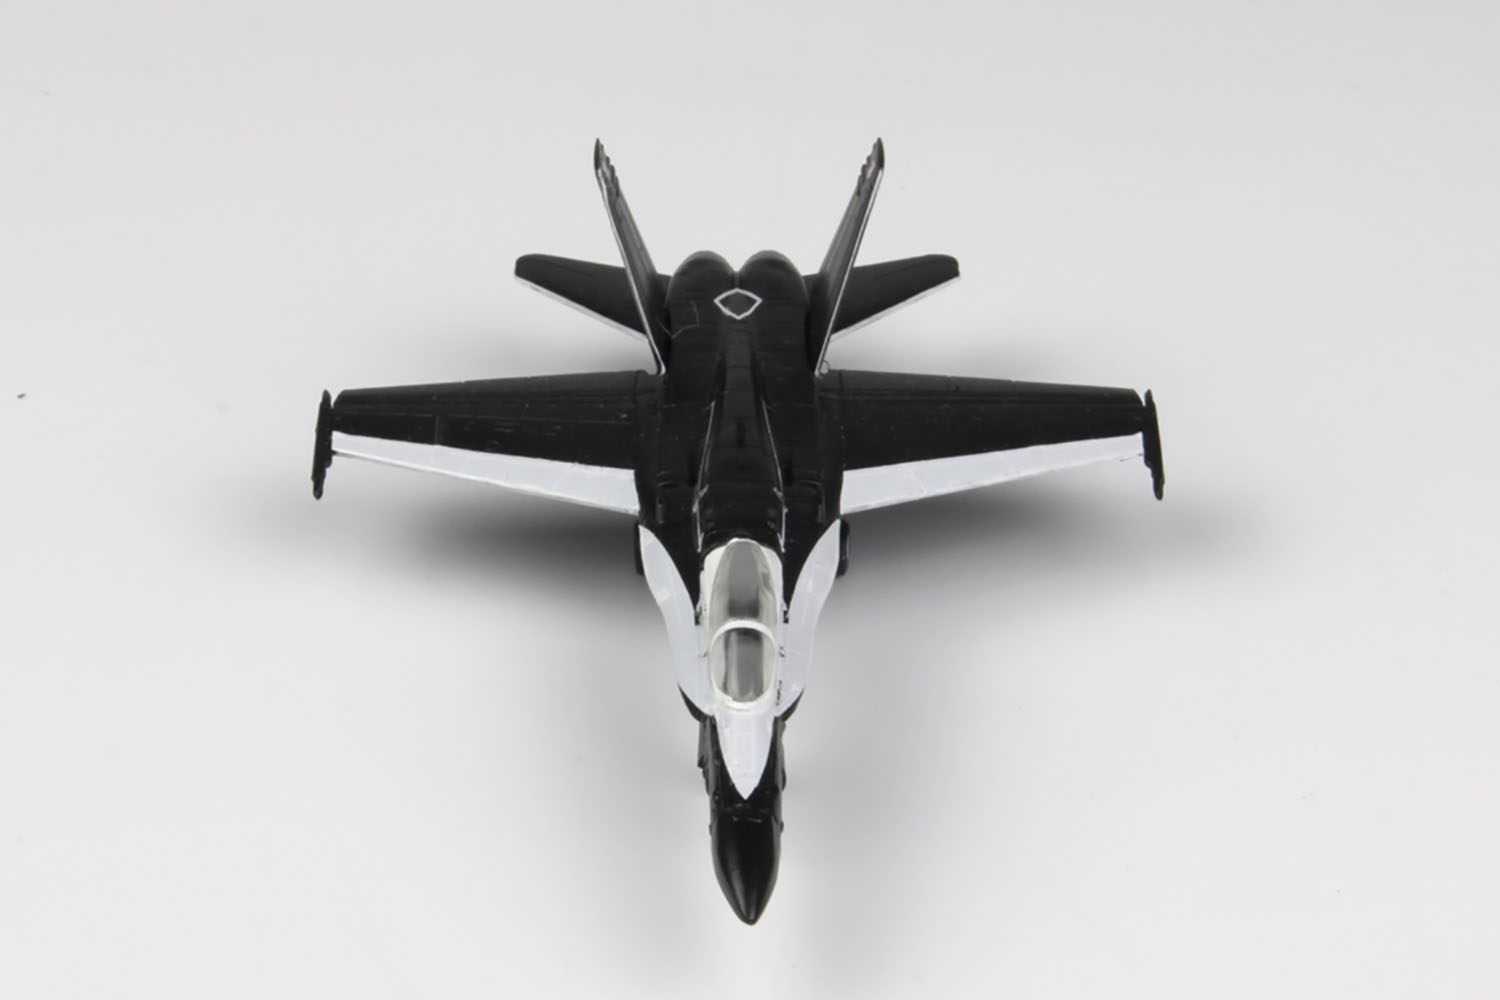 1/144 オーストラリア空軍 戦闘機 F/A-18A ホーネット NO.75 SQ 機種転換記念塗装 ’ブラック･マグパイ’ - ウインドウを閉じる